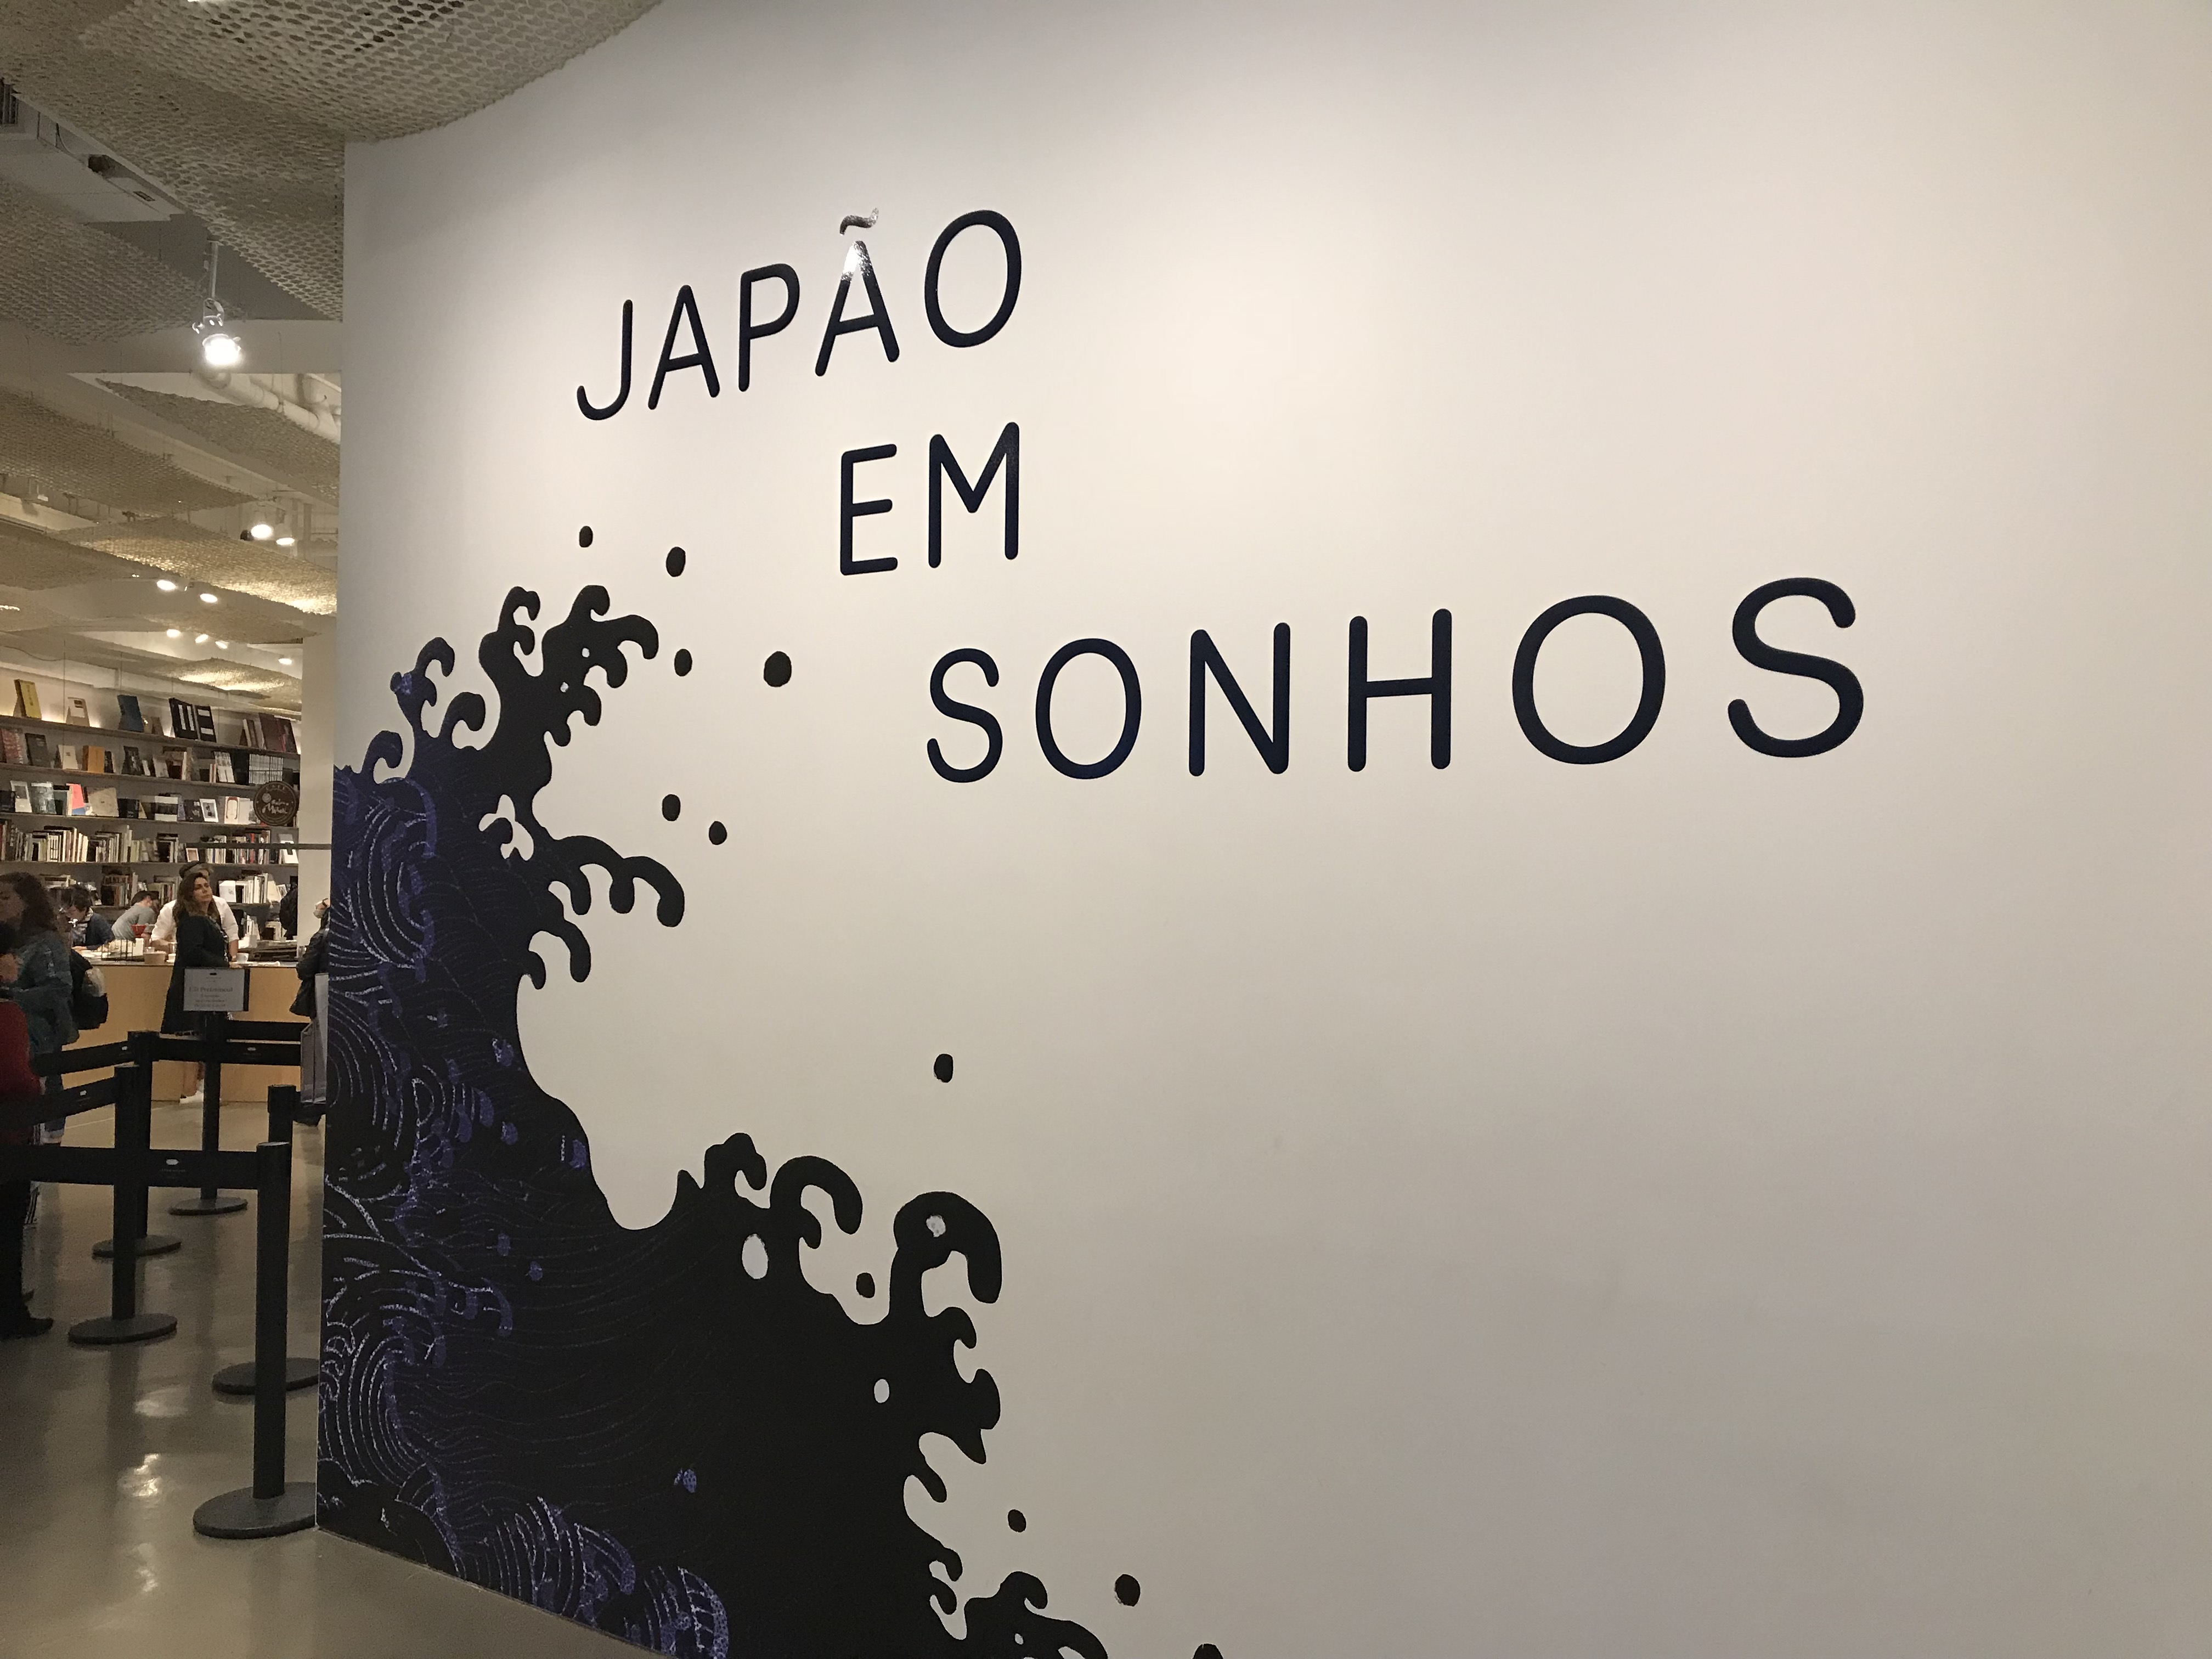 Japan House São Paulo